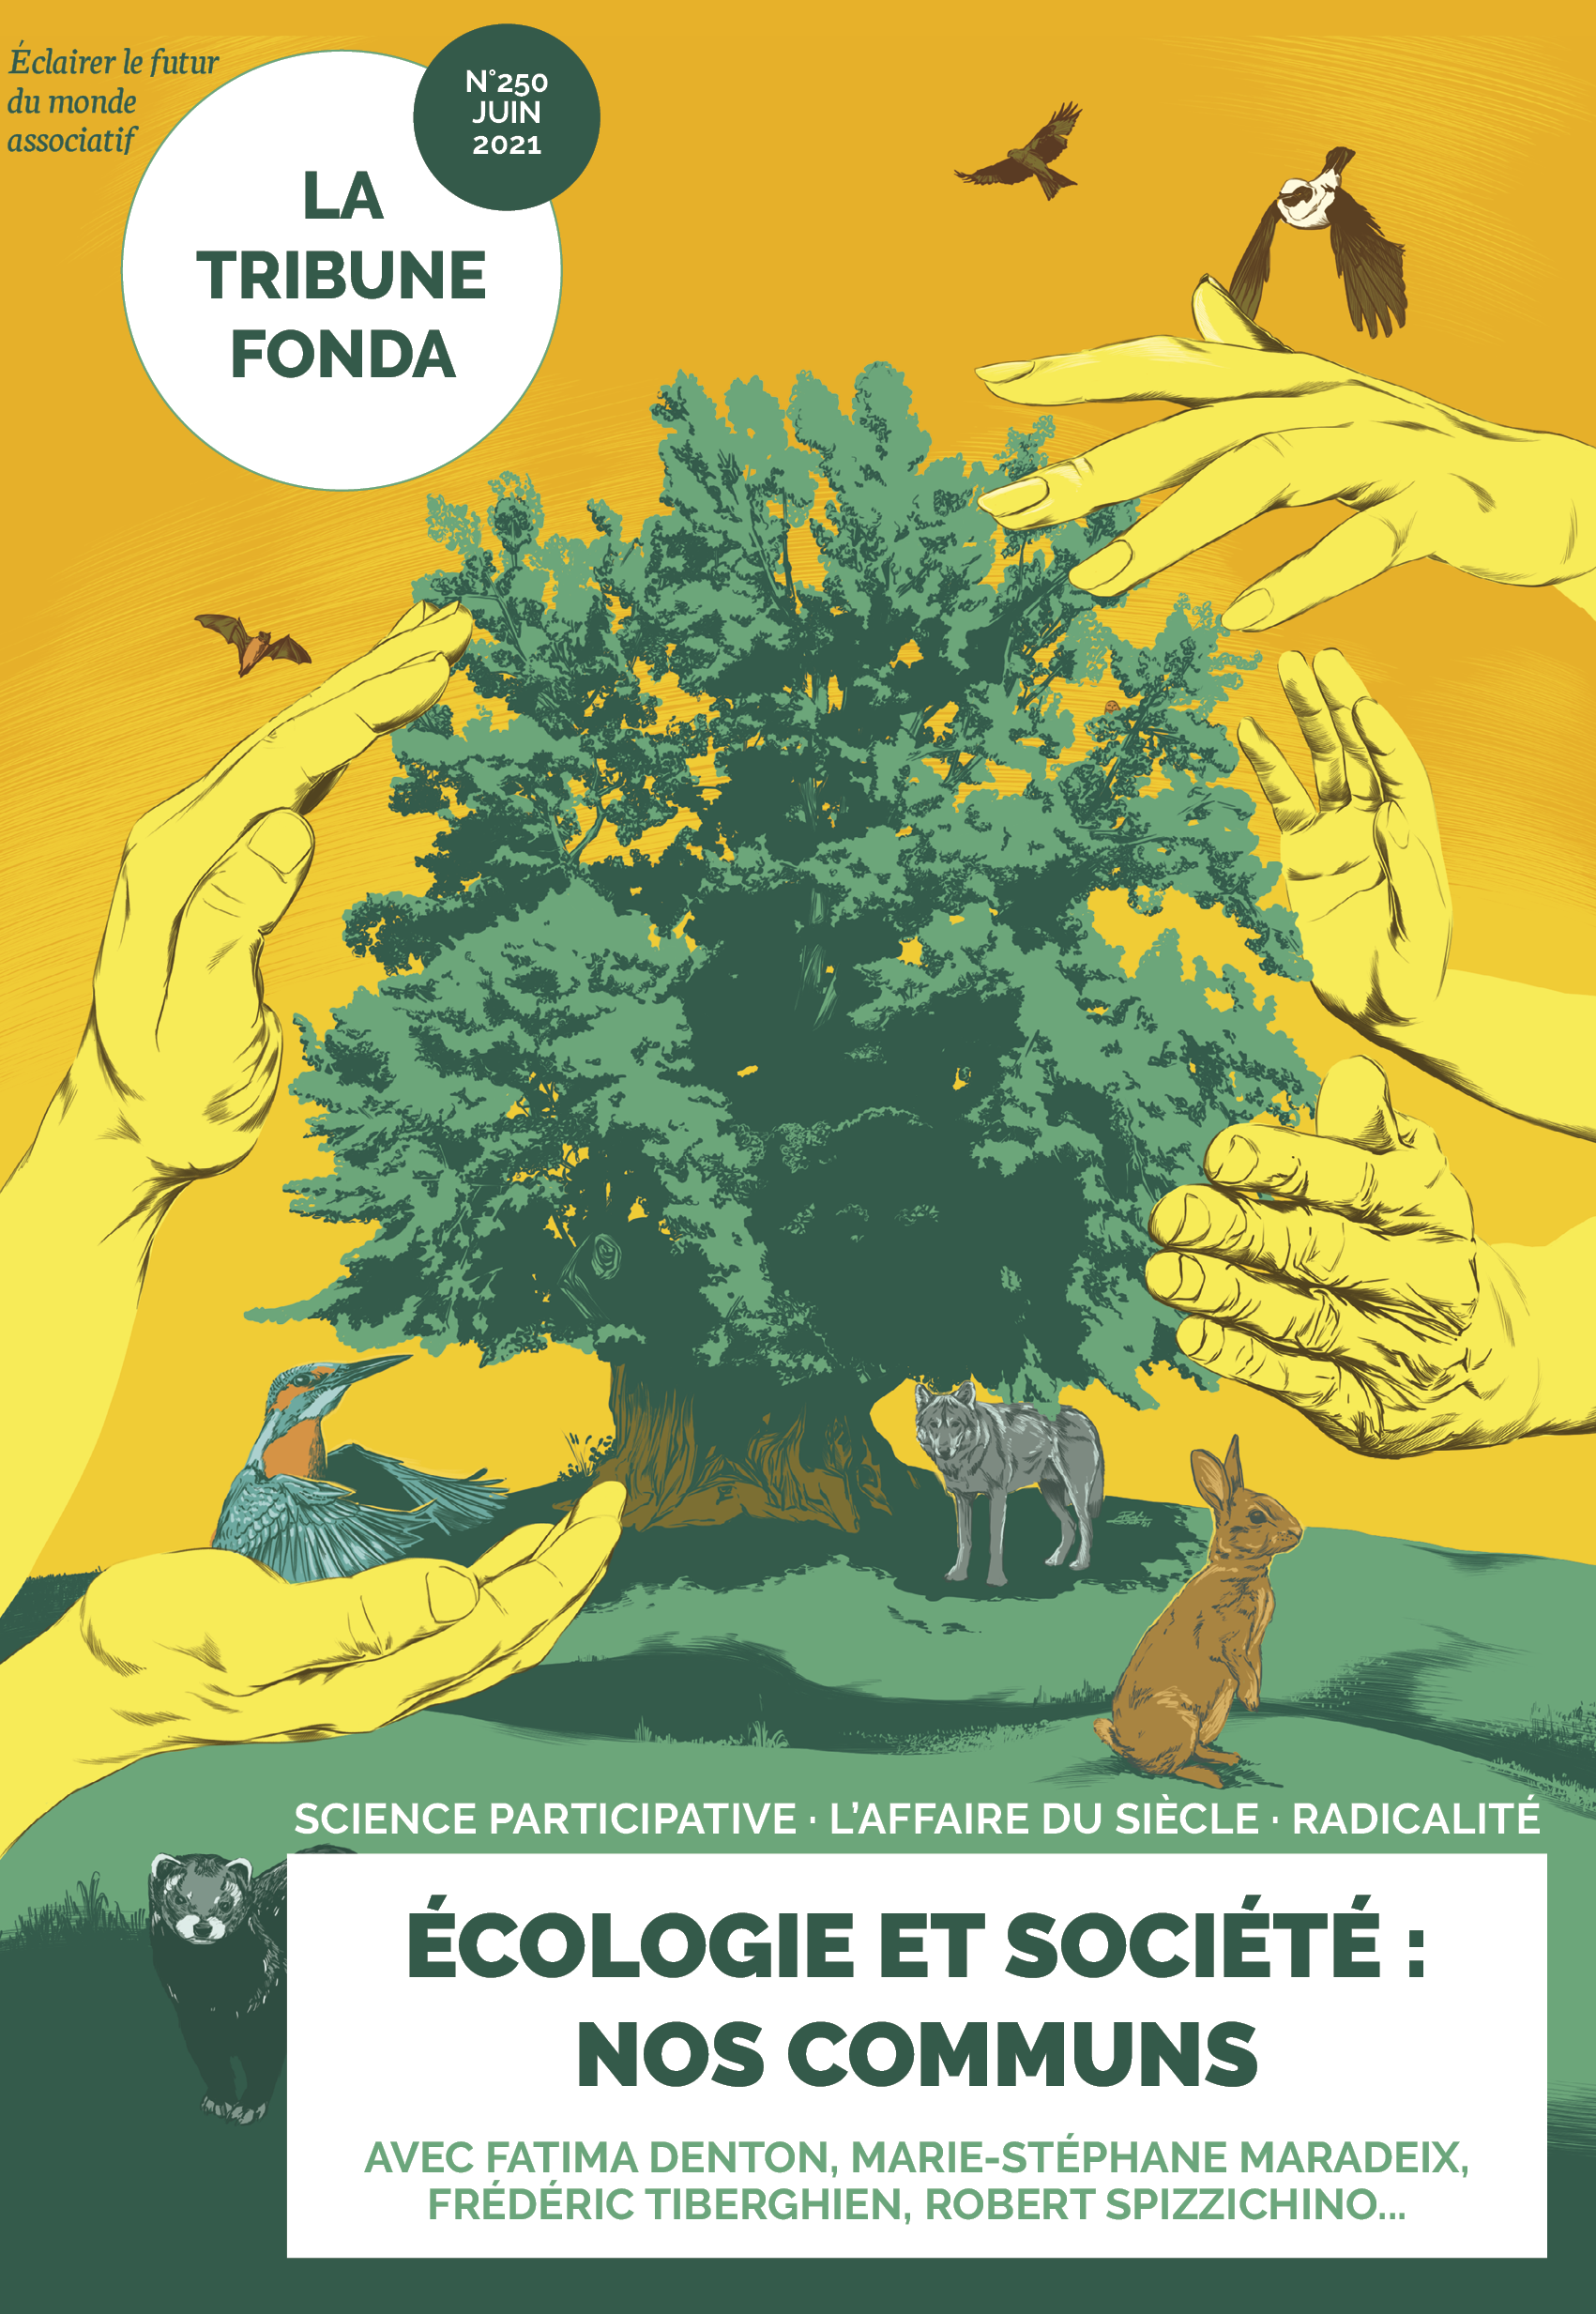 Ecologie sans transition, le livre par Désobéissance-Ecolo Paris